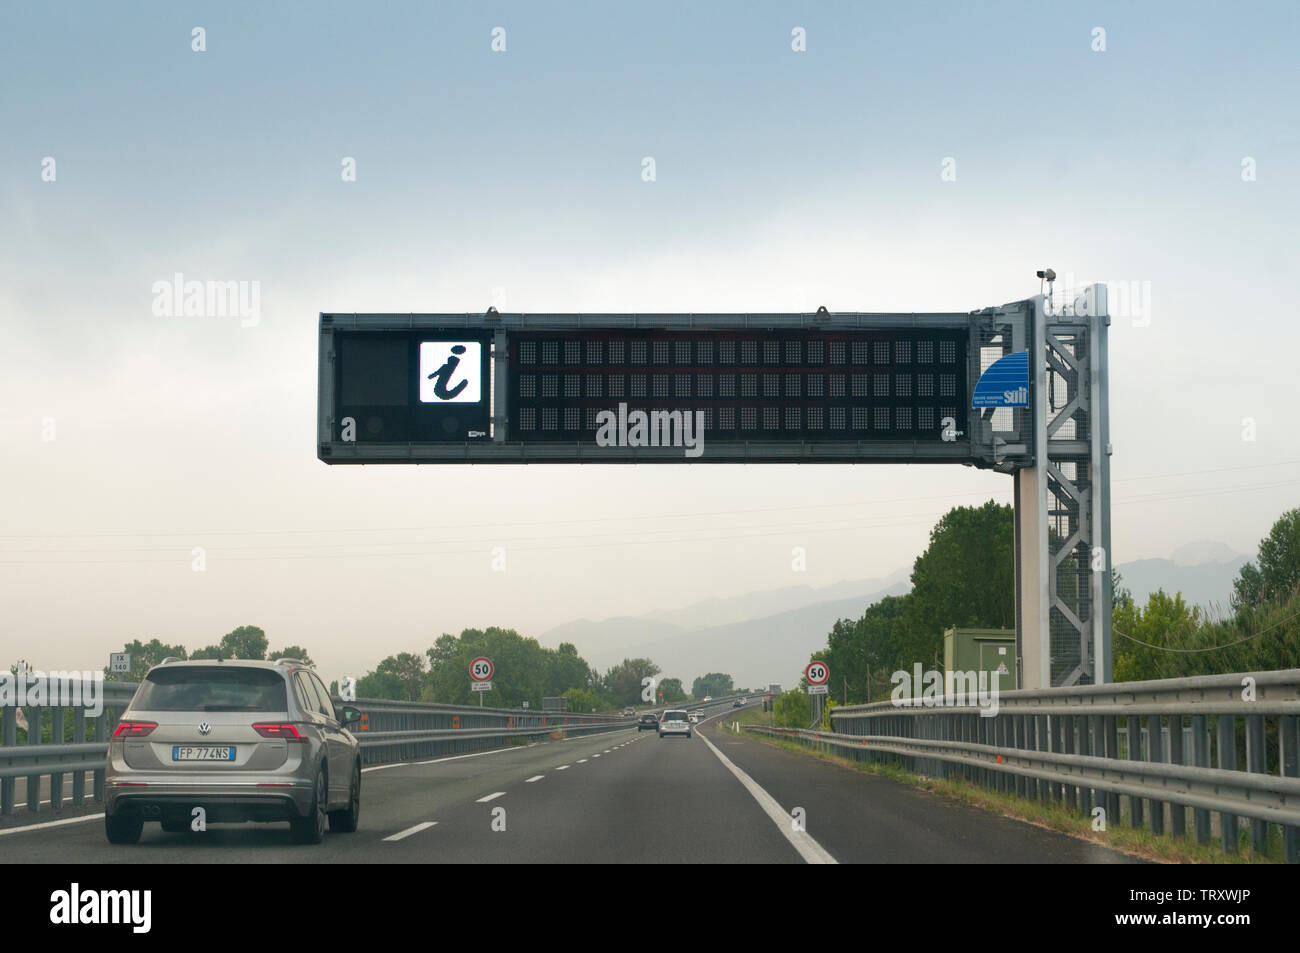 PISA , Italia - Giugno 10, 2019: segnapunti elettronici per informazioni su traffico e meteo su una autostrada italiana Foto Stock